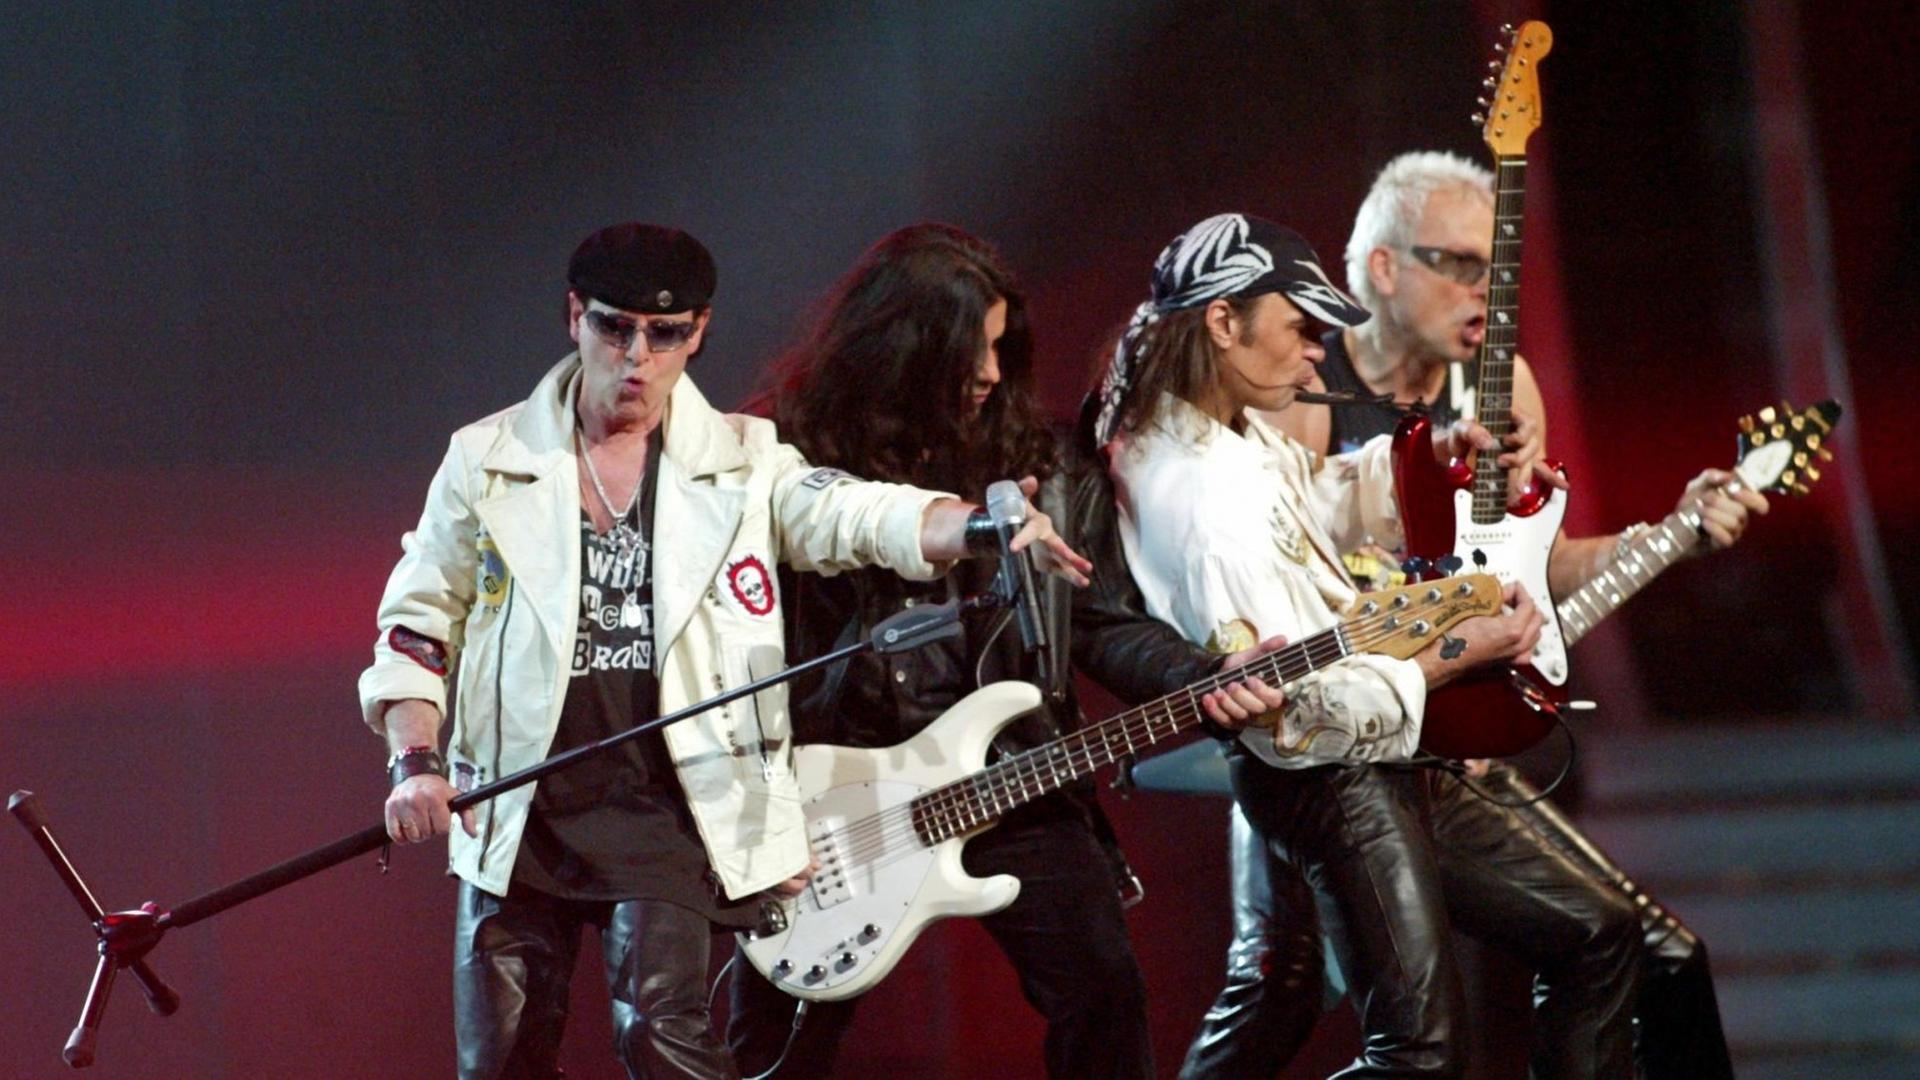 Die Rockband Scorpions auf der Bühne bei der Interpretation ihres Songs "Wind of Change" 2004.